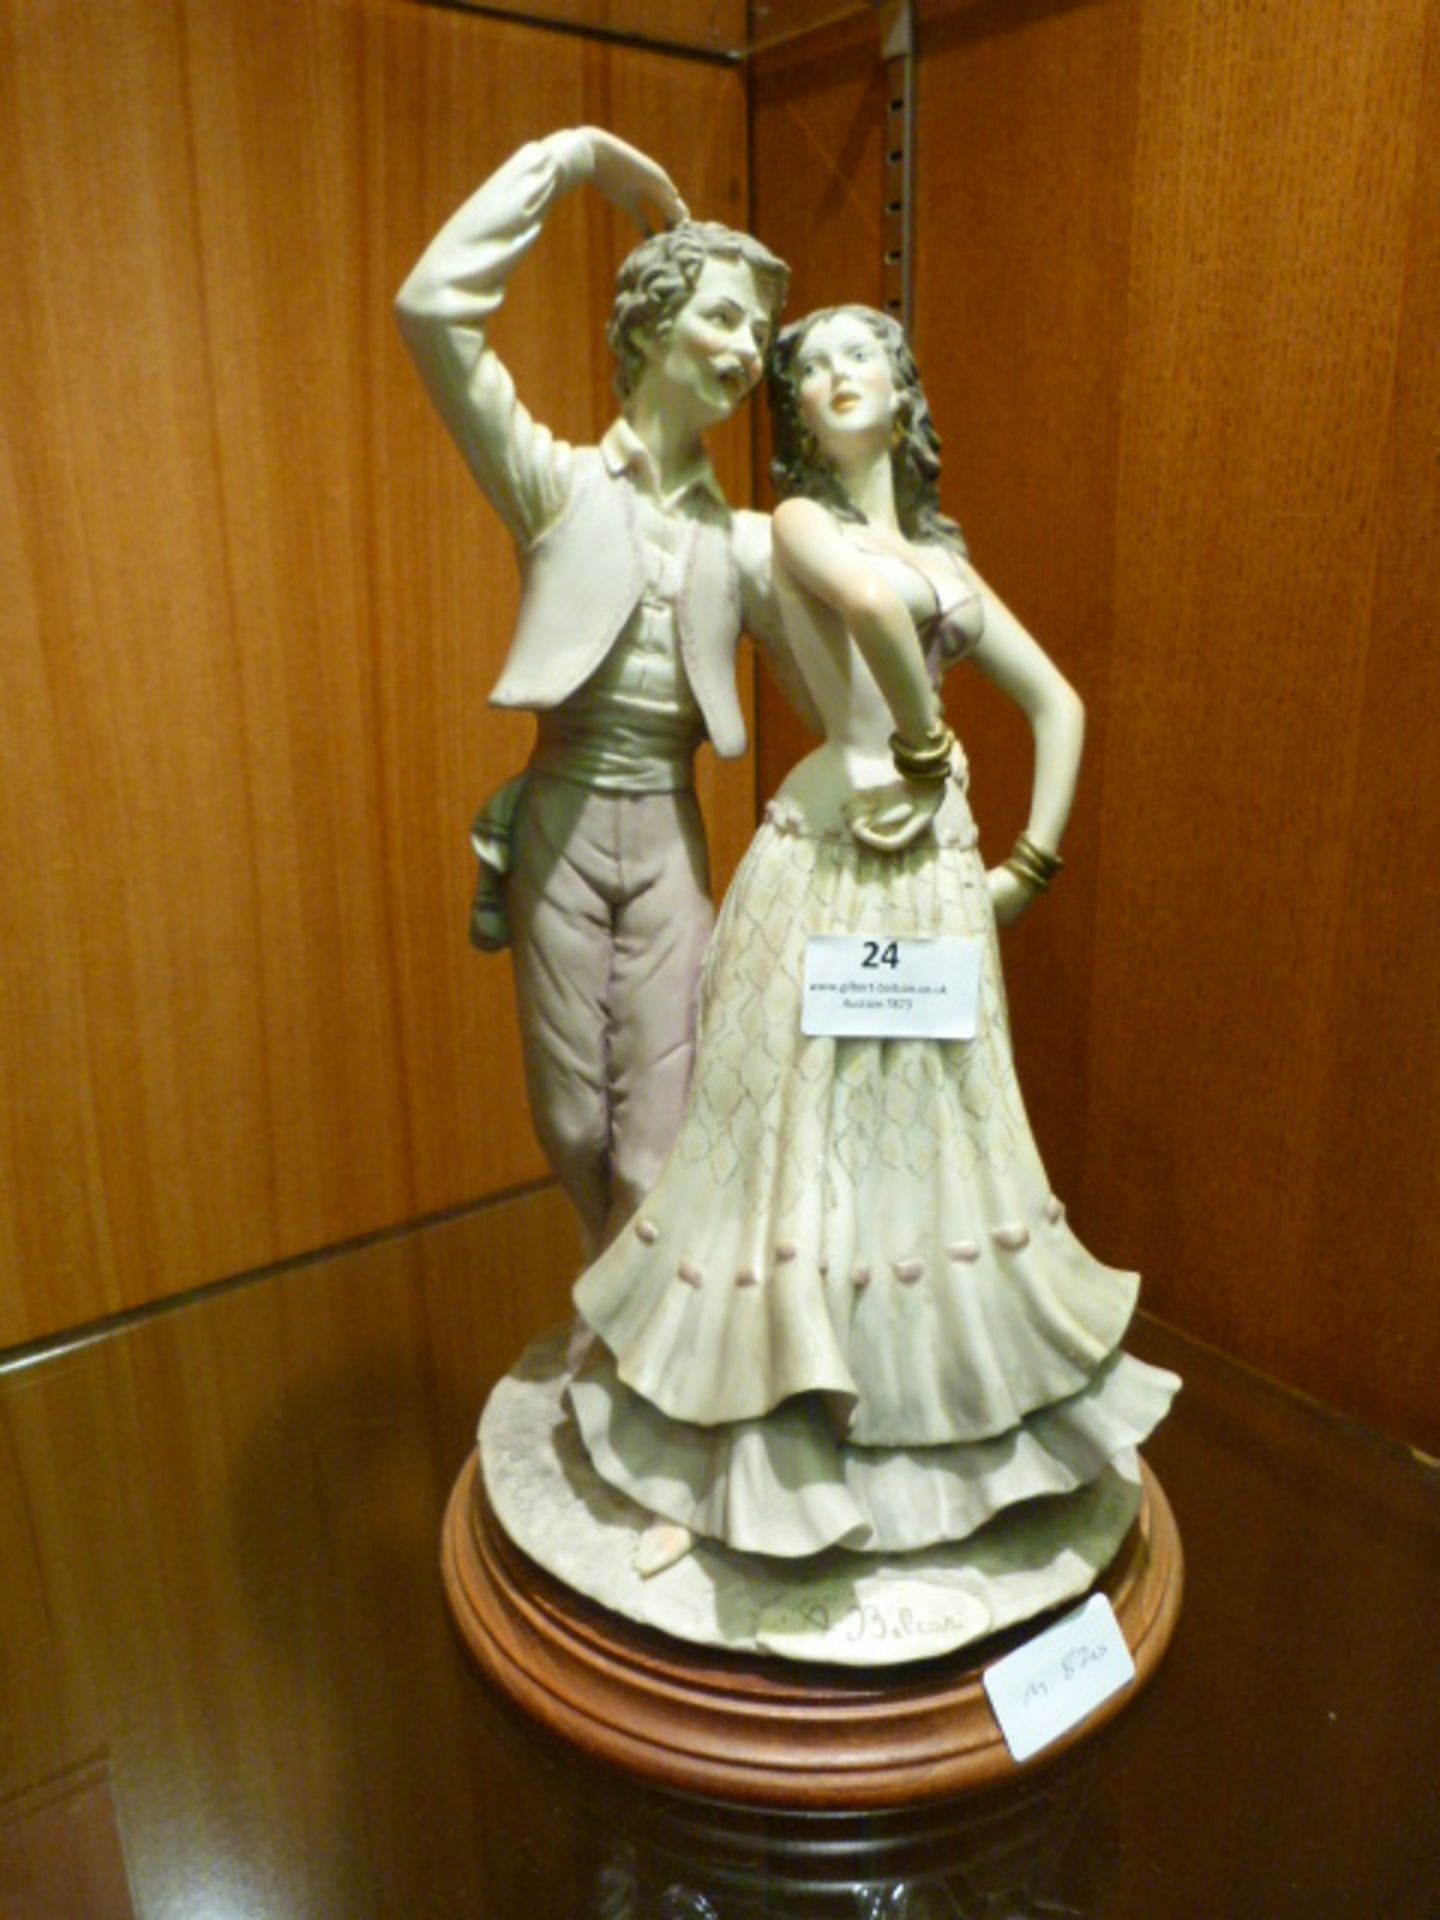 Italian A. Belcar Pottery Figurine "Dancing Couple